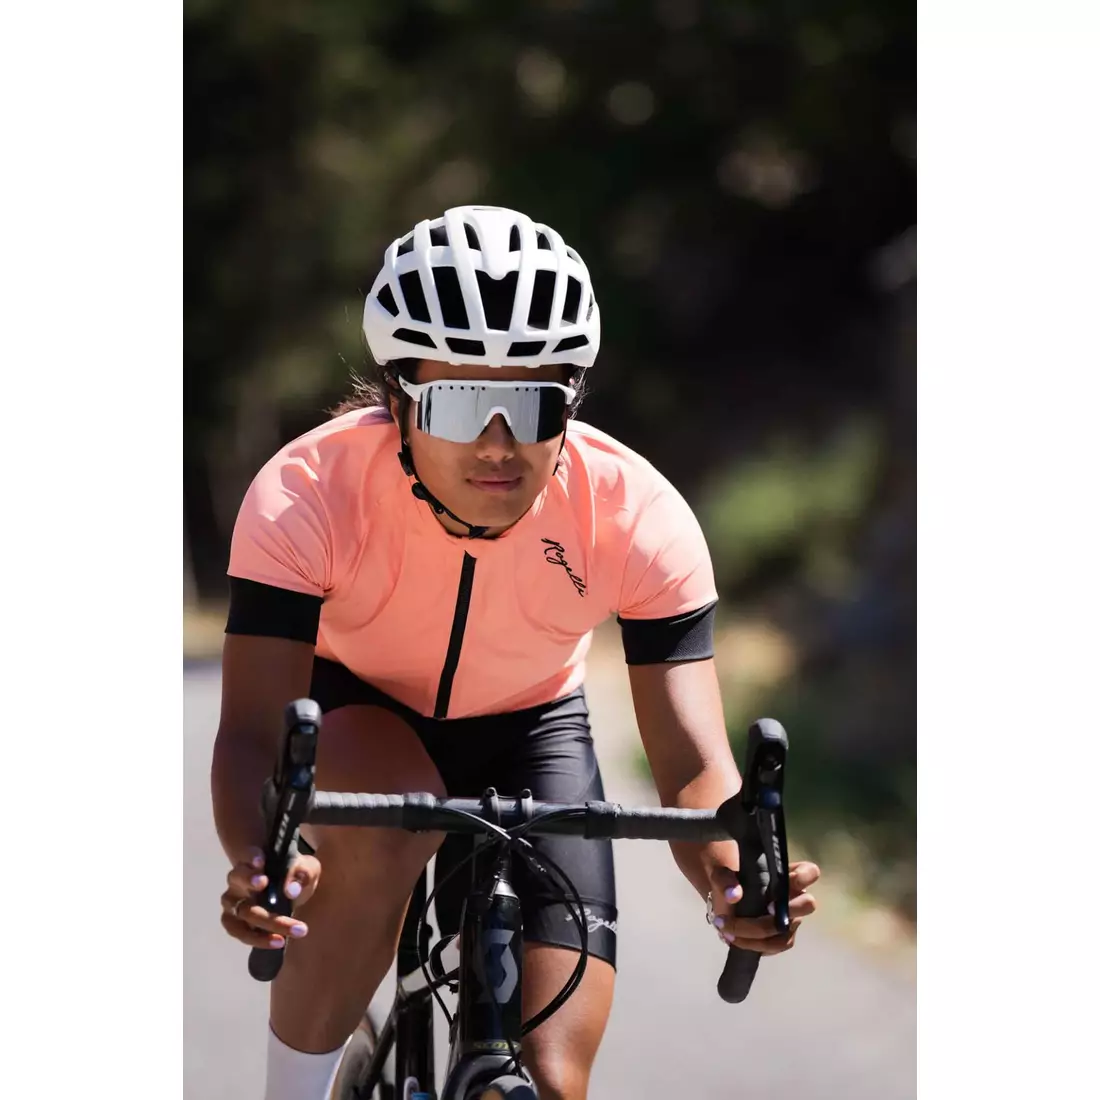 Rogelli MODESTA dámský cyklistický dres, korálově černá